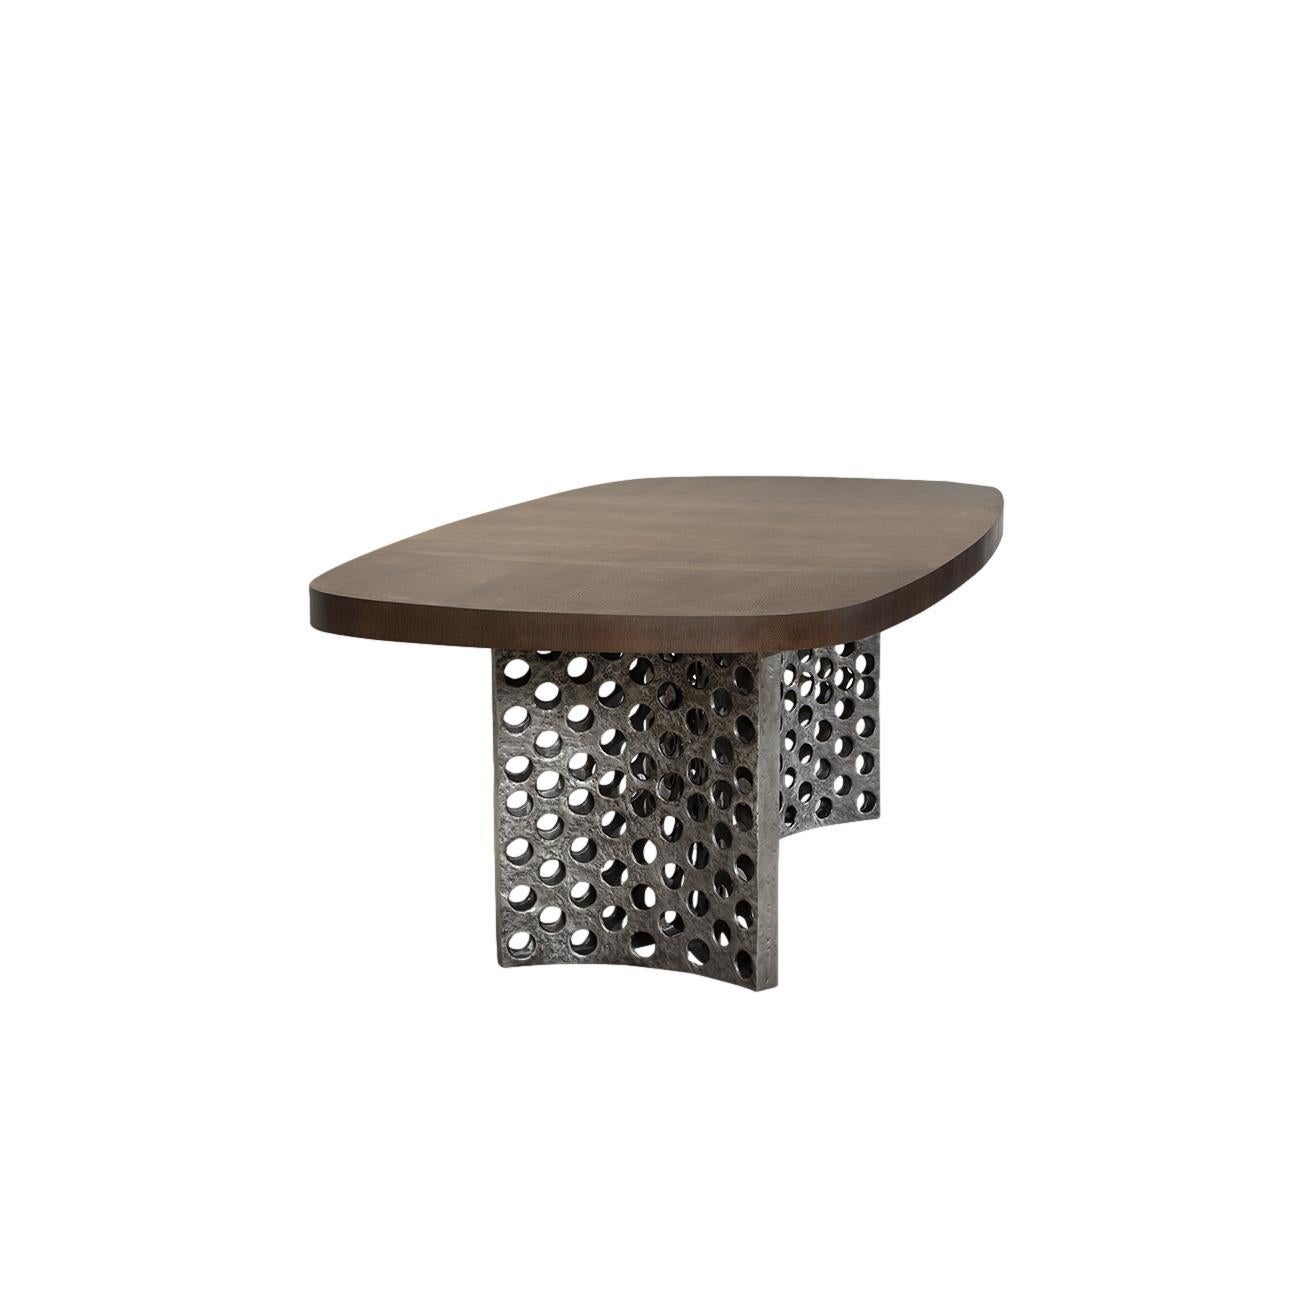 Cette table tire son nom de la forme d'hélice de sa base, adoucie par la texture alvéolaire sculpturale de son piètement en aluminium moulé.
Cette table de salle à manger est dotée d'une base en aluminium moulé brûlé et d'une surface en